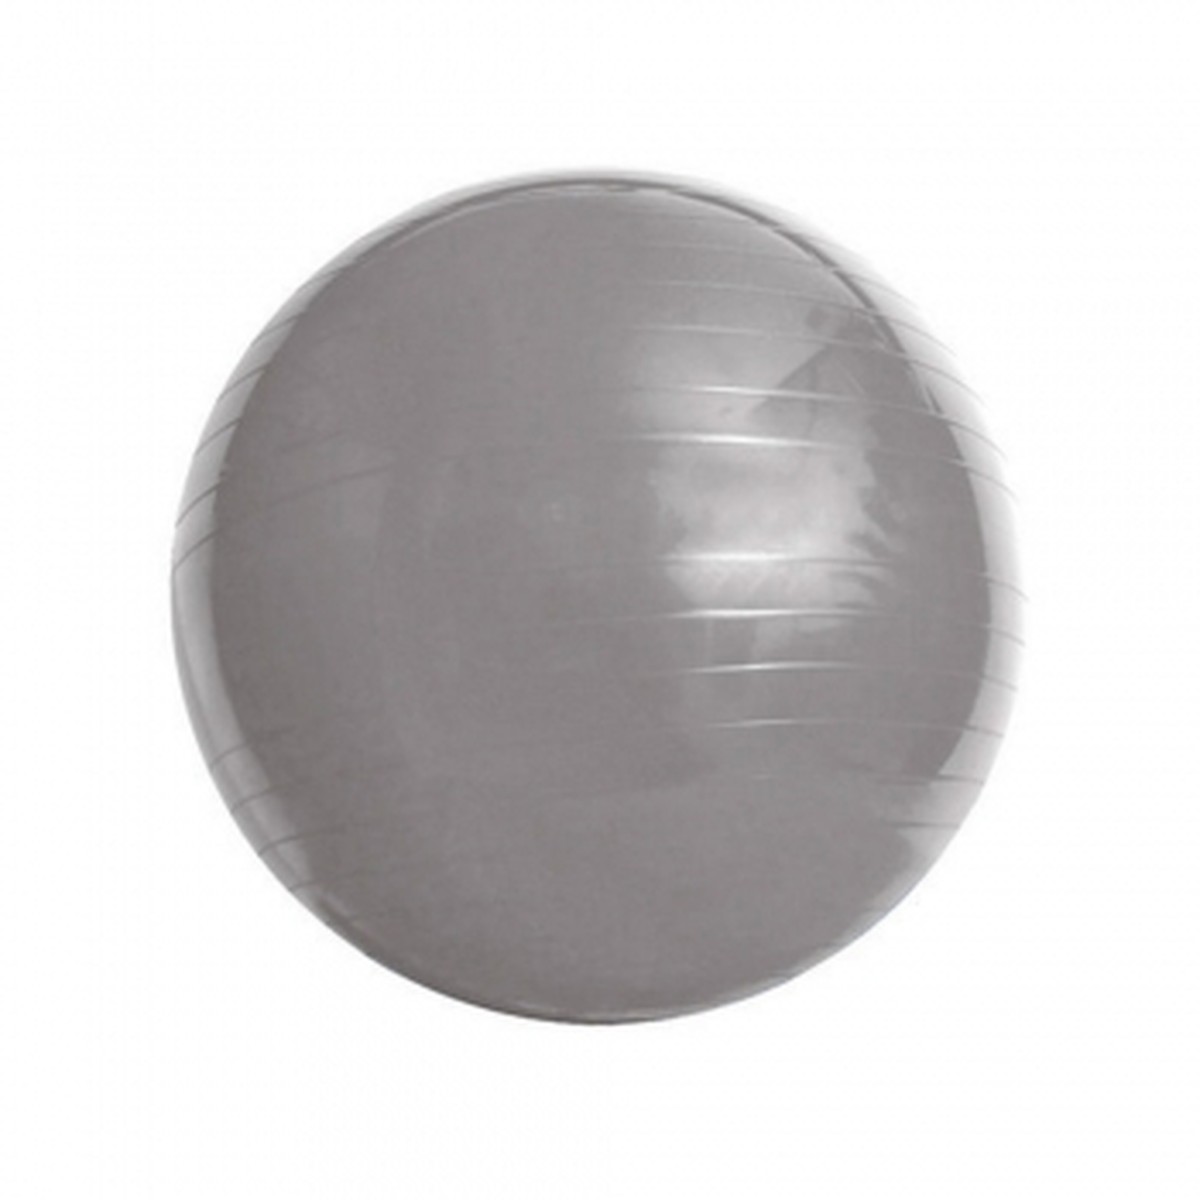 Foto do produto Bola de Ginástica Supermedy 85 cm